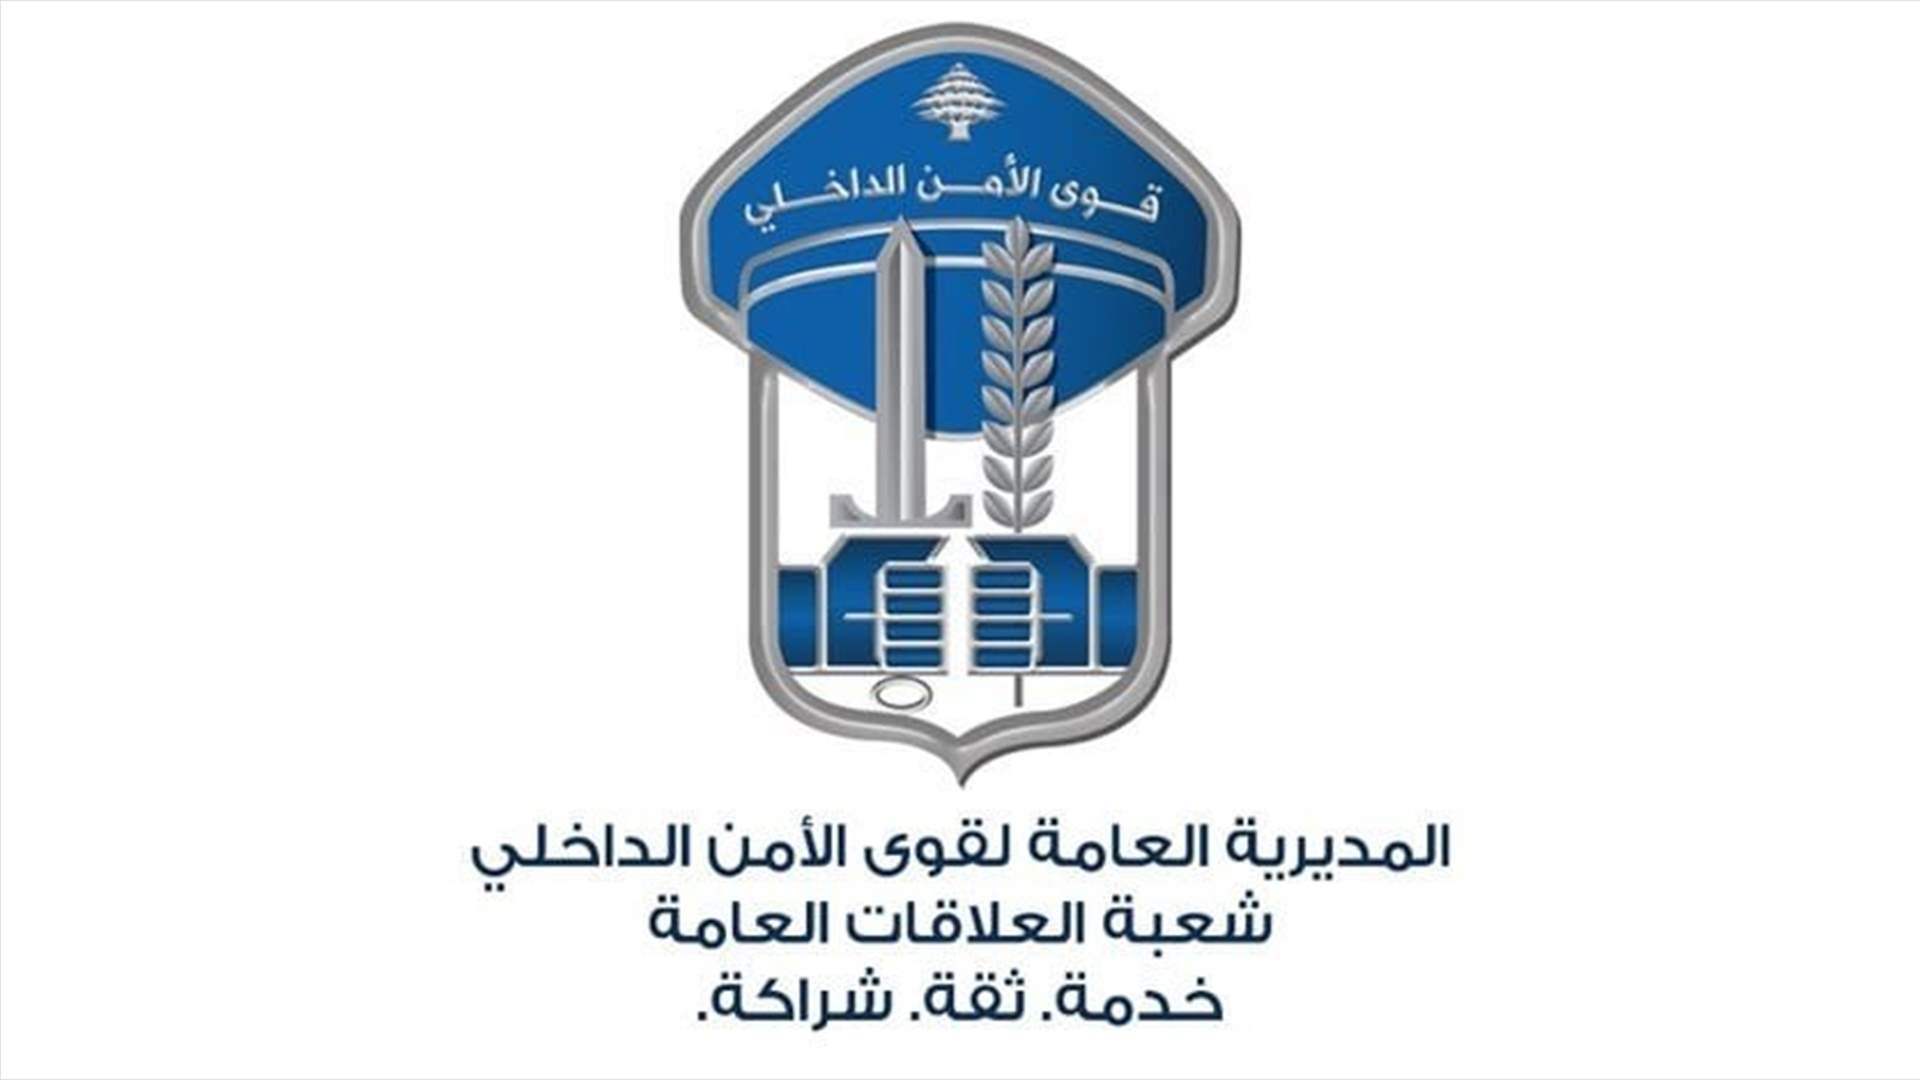 قوى الأمن: توقيف عصابة تنشط بترويج العملة المزيفة في قضاء بنت جبيل